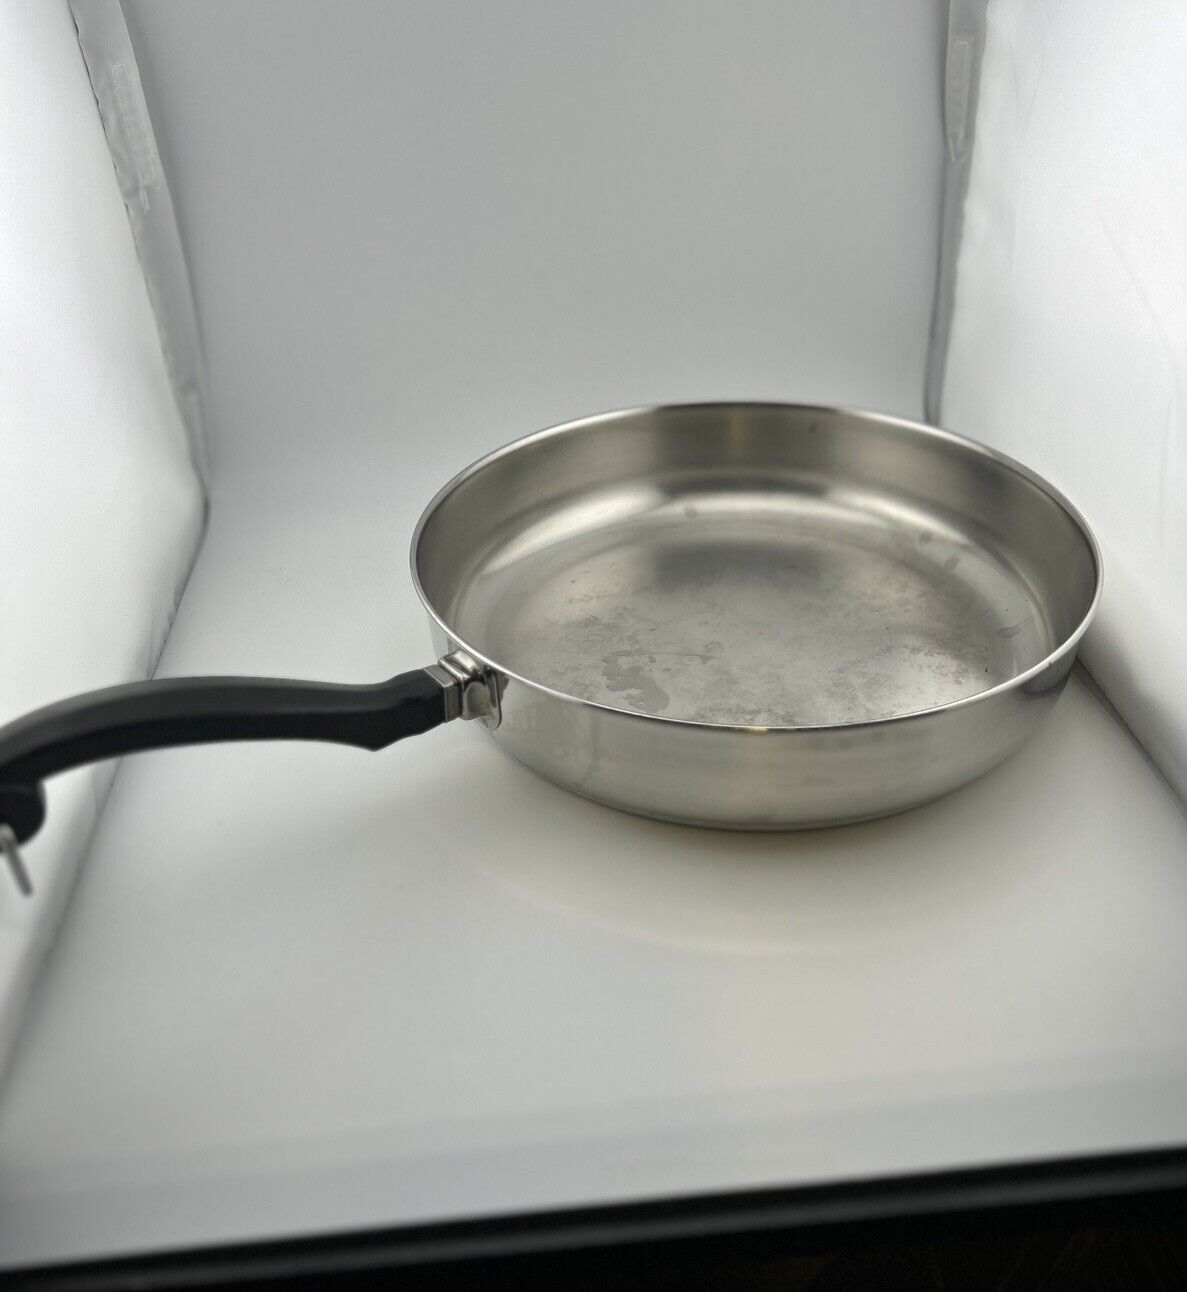 FARBERWARE Skillet Frying Pan 10” Aluminum Clad Stainless Steel No Lid Vintage